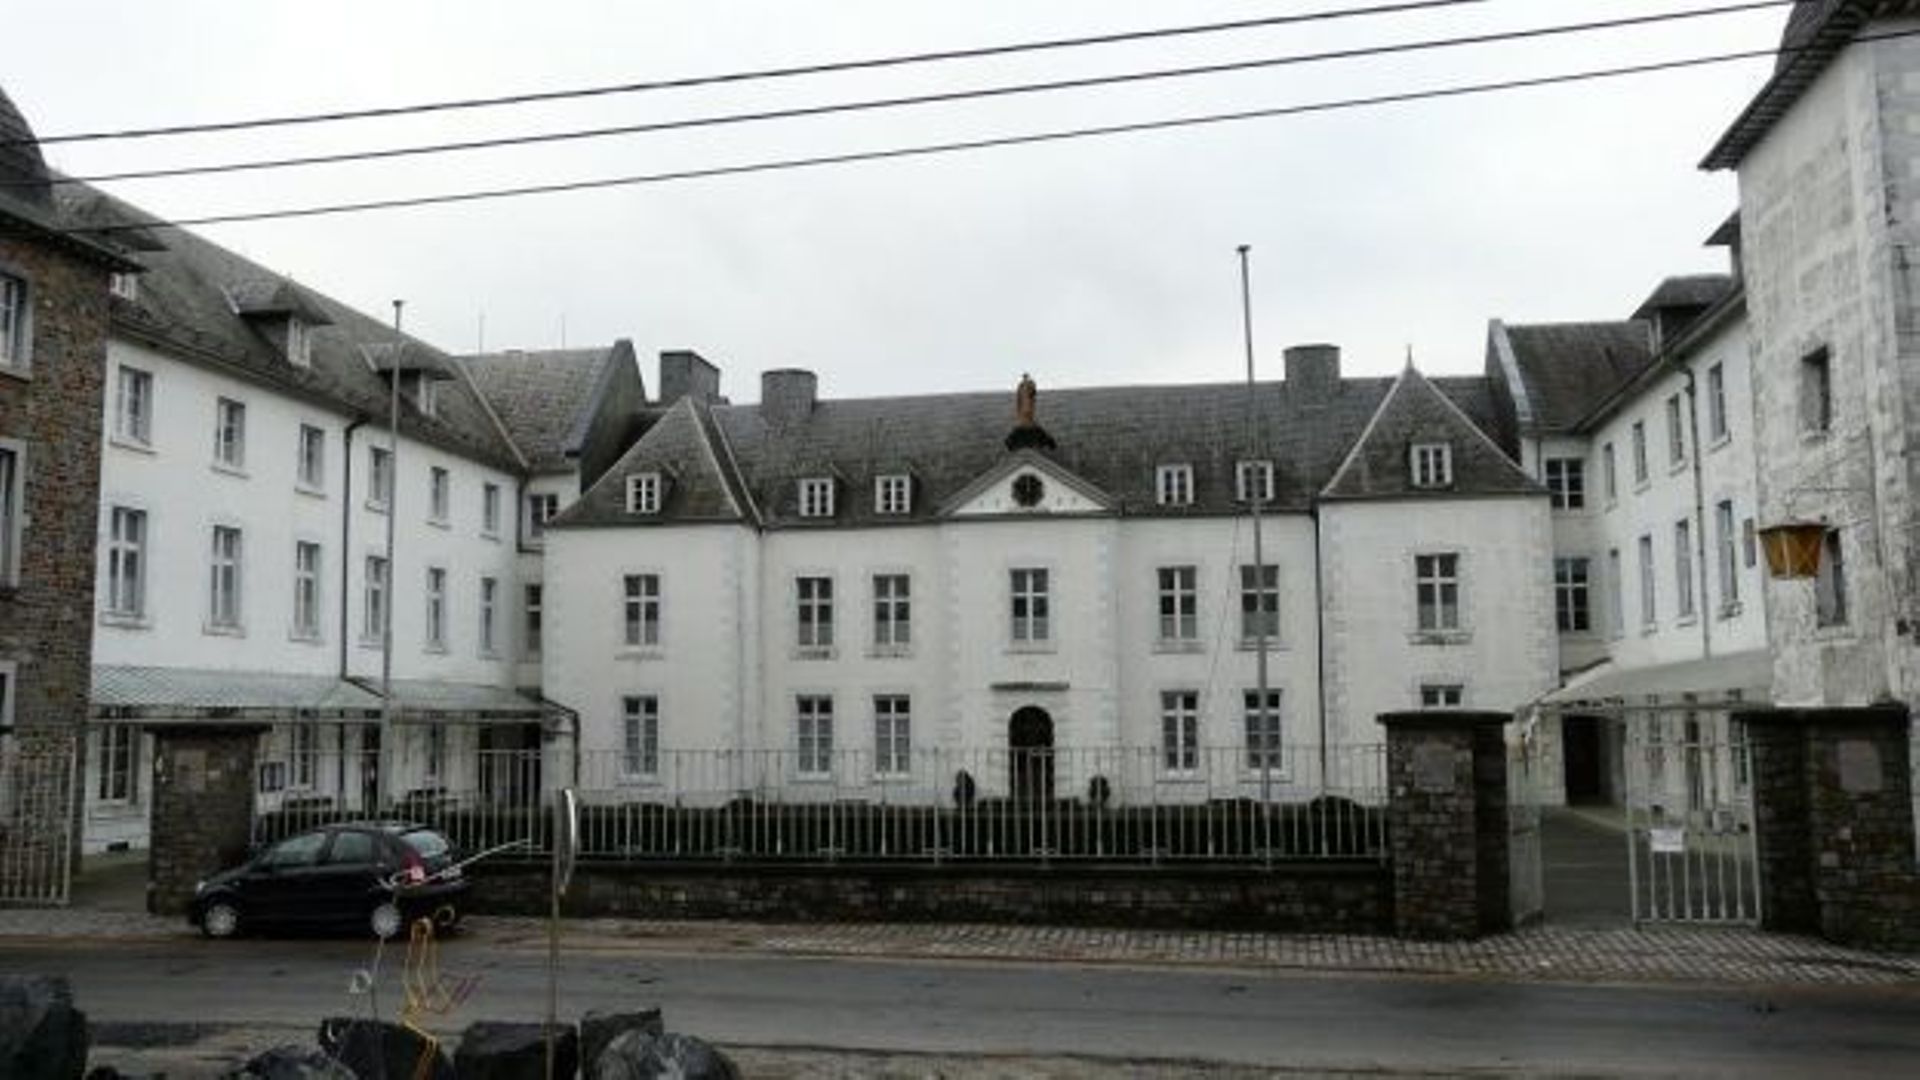 Institut Saint-Joseph de Carlsbourg, bâtiment typique de la région